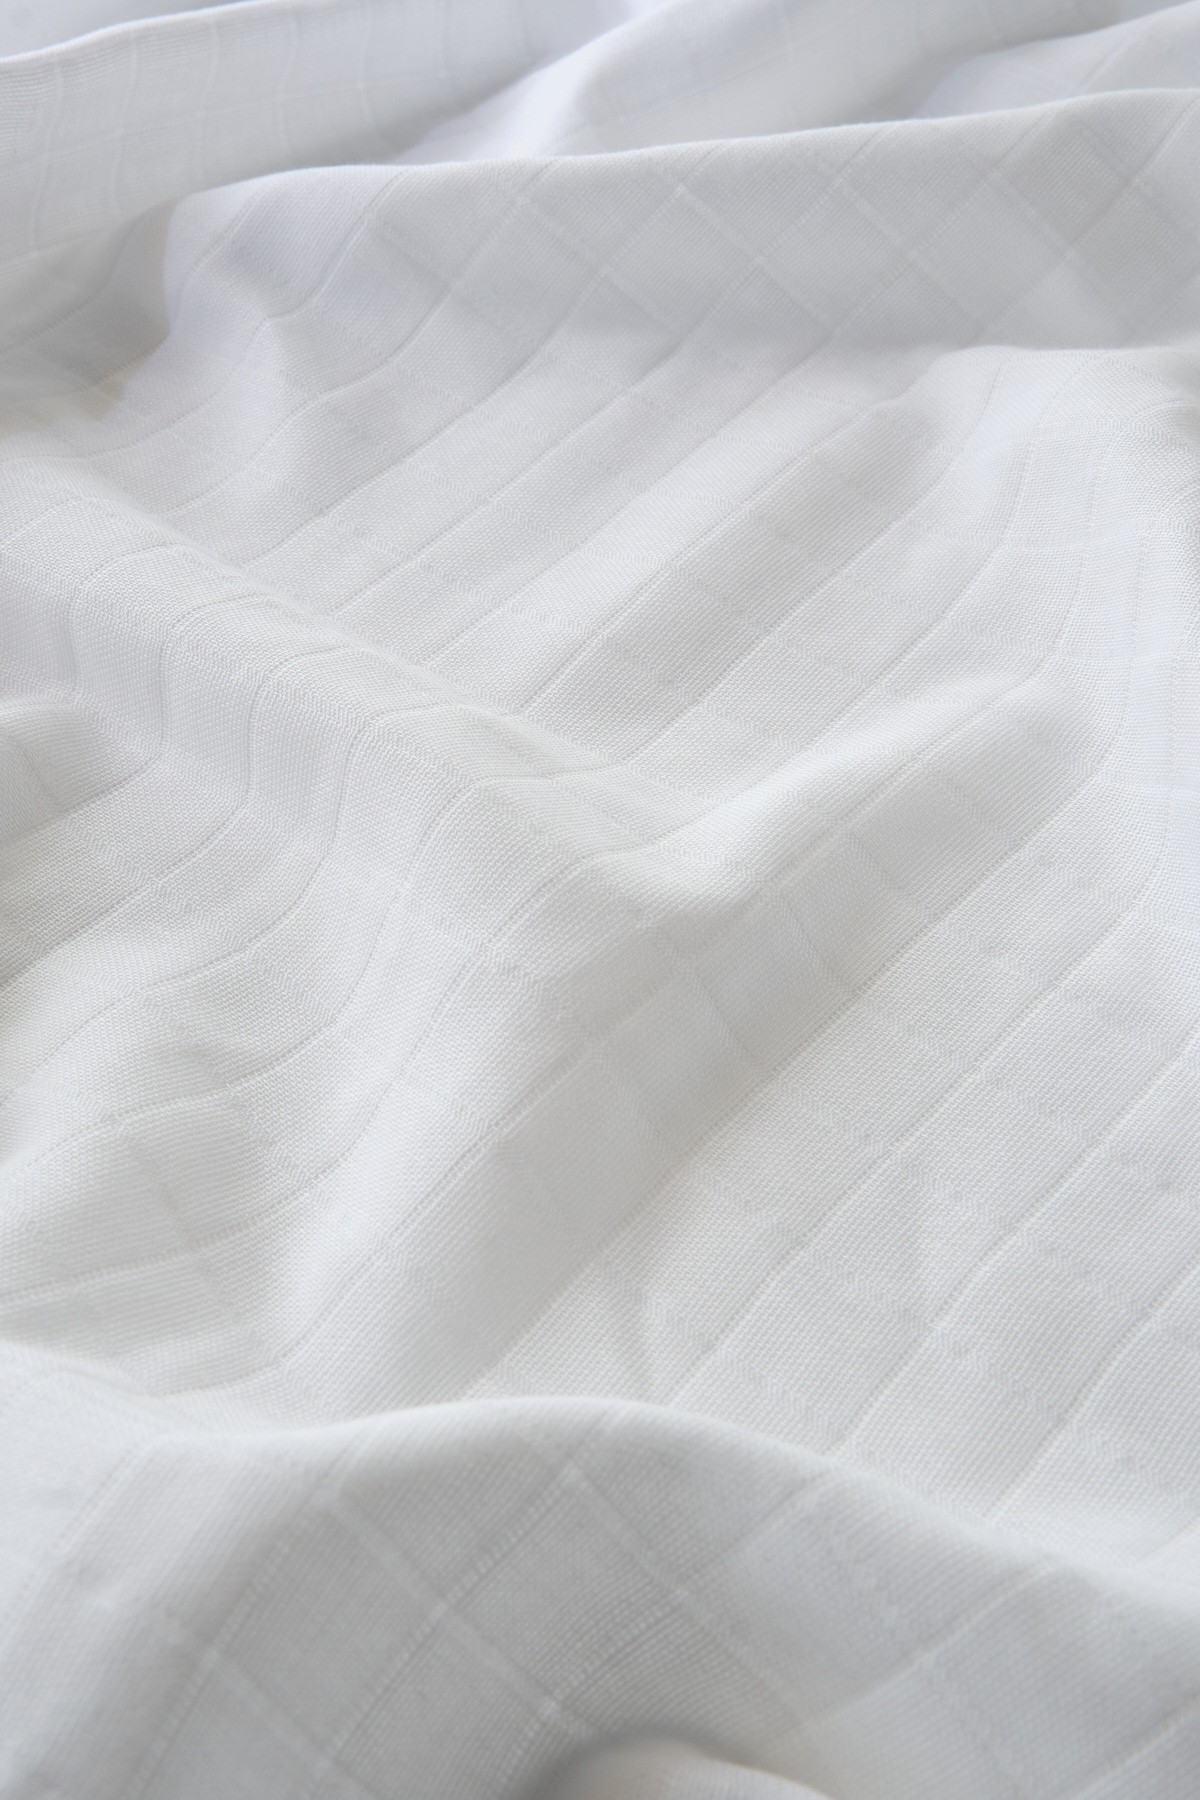 Müslin Bezi Örtü Düz Renk Beyaz 120x120 cm + 4 Adet Ağız Mendili